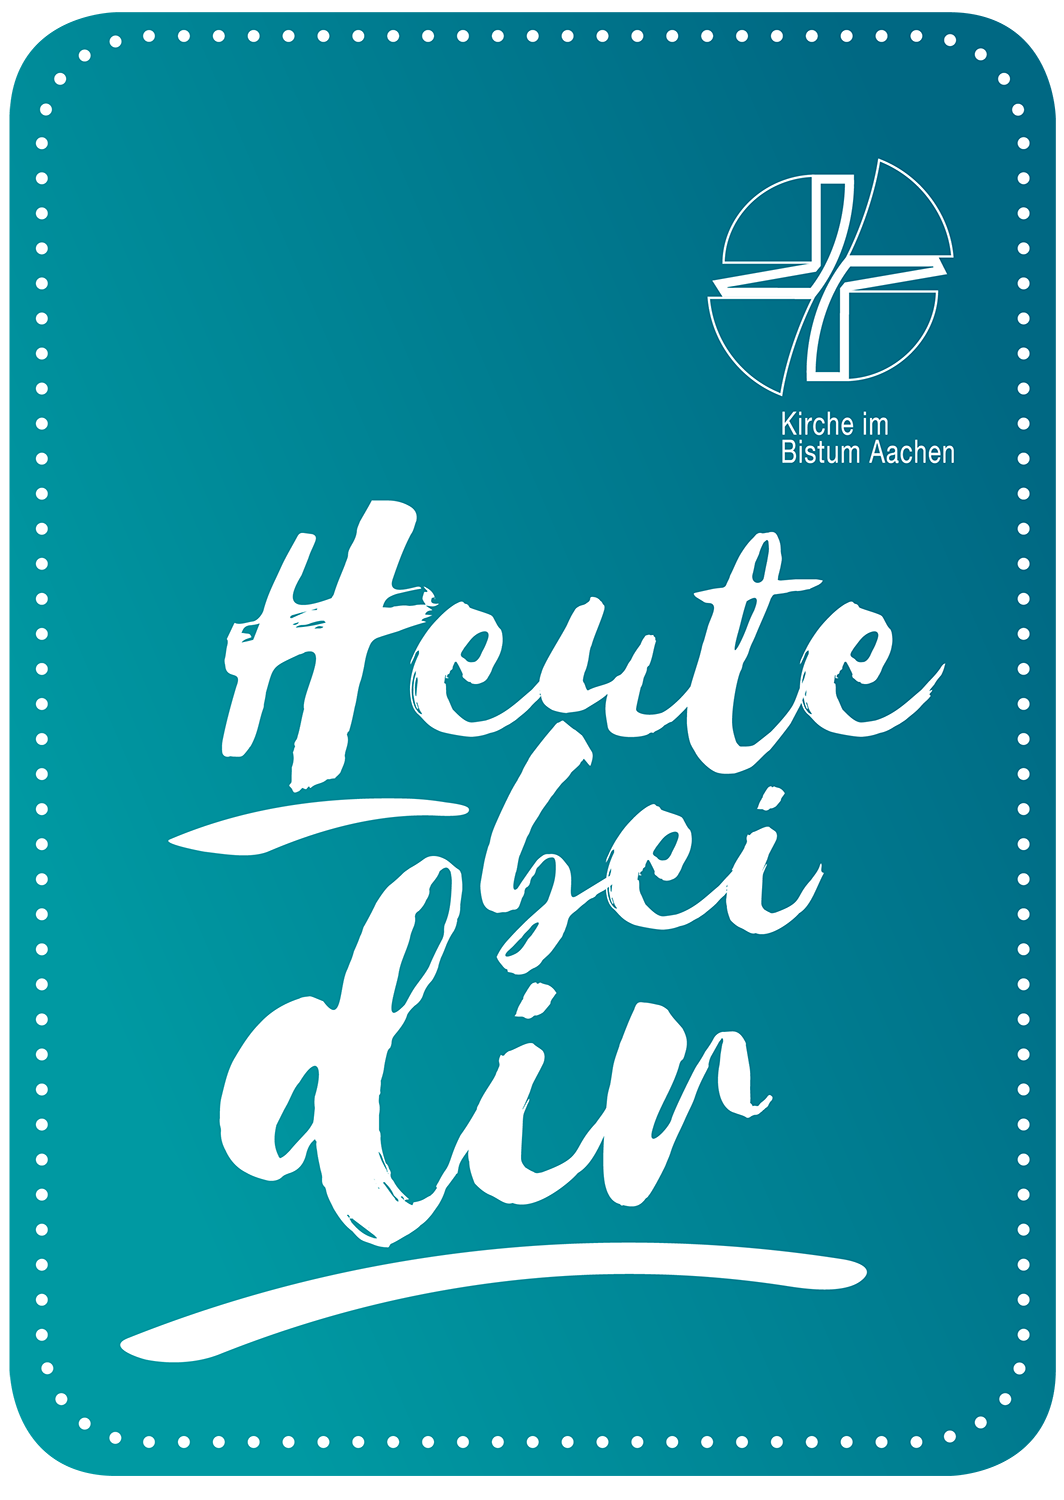 Logo Newsletter (c) Bistum Aachen